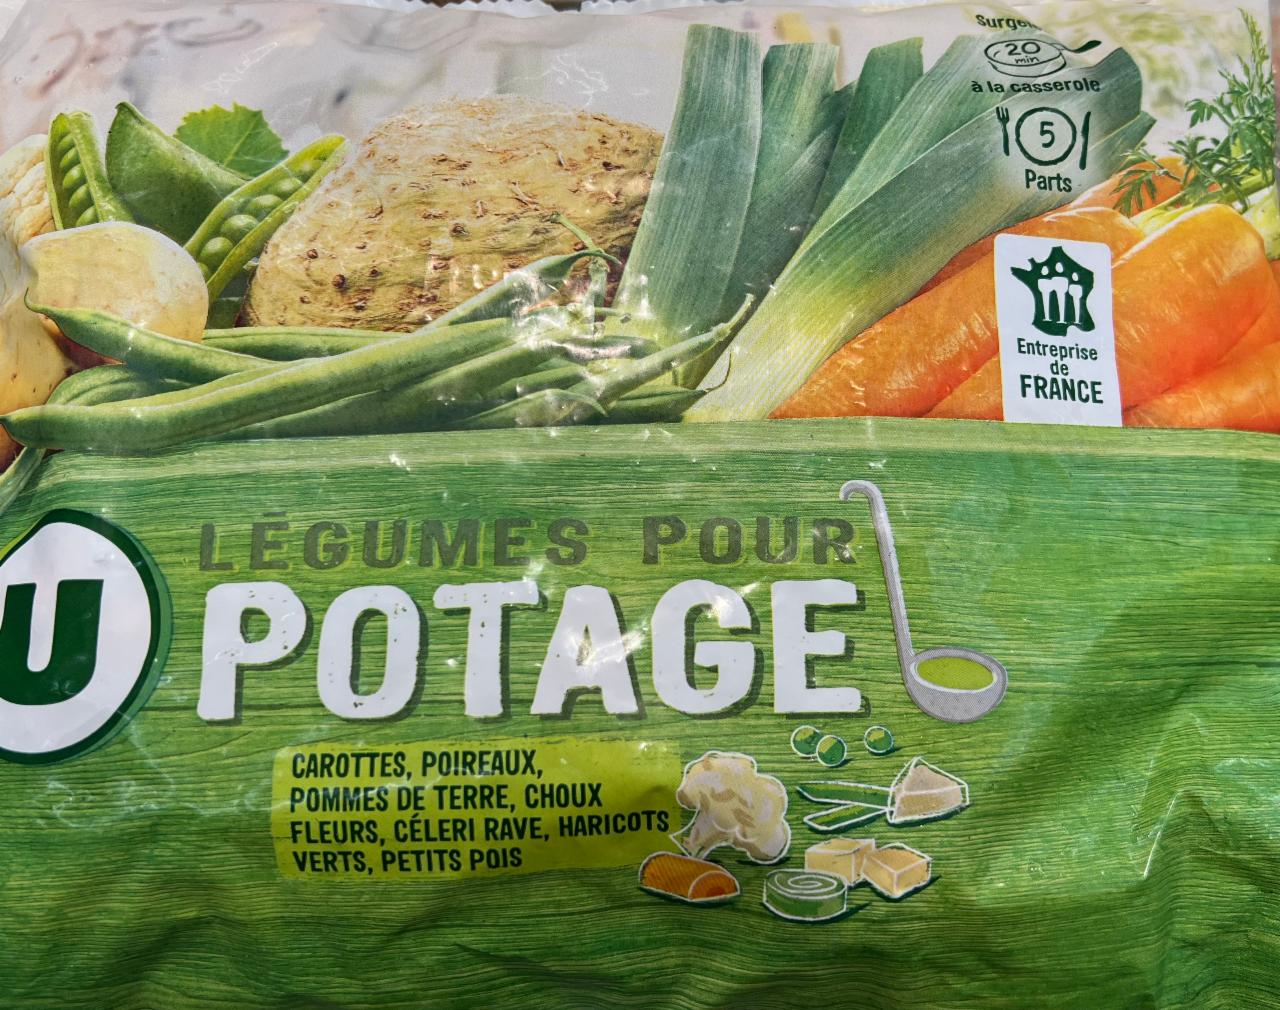 Fotografie - Légumes Pour Potage U